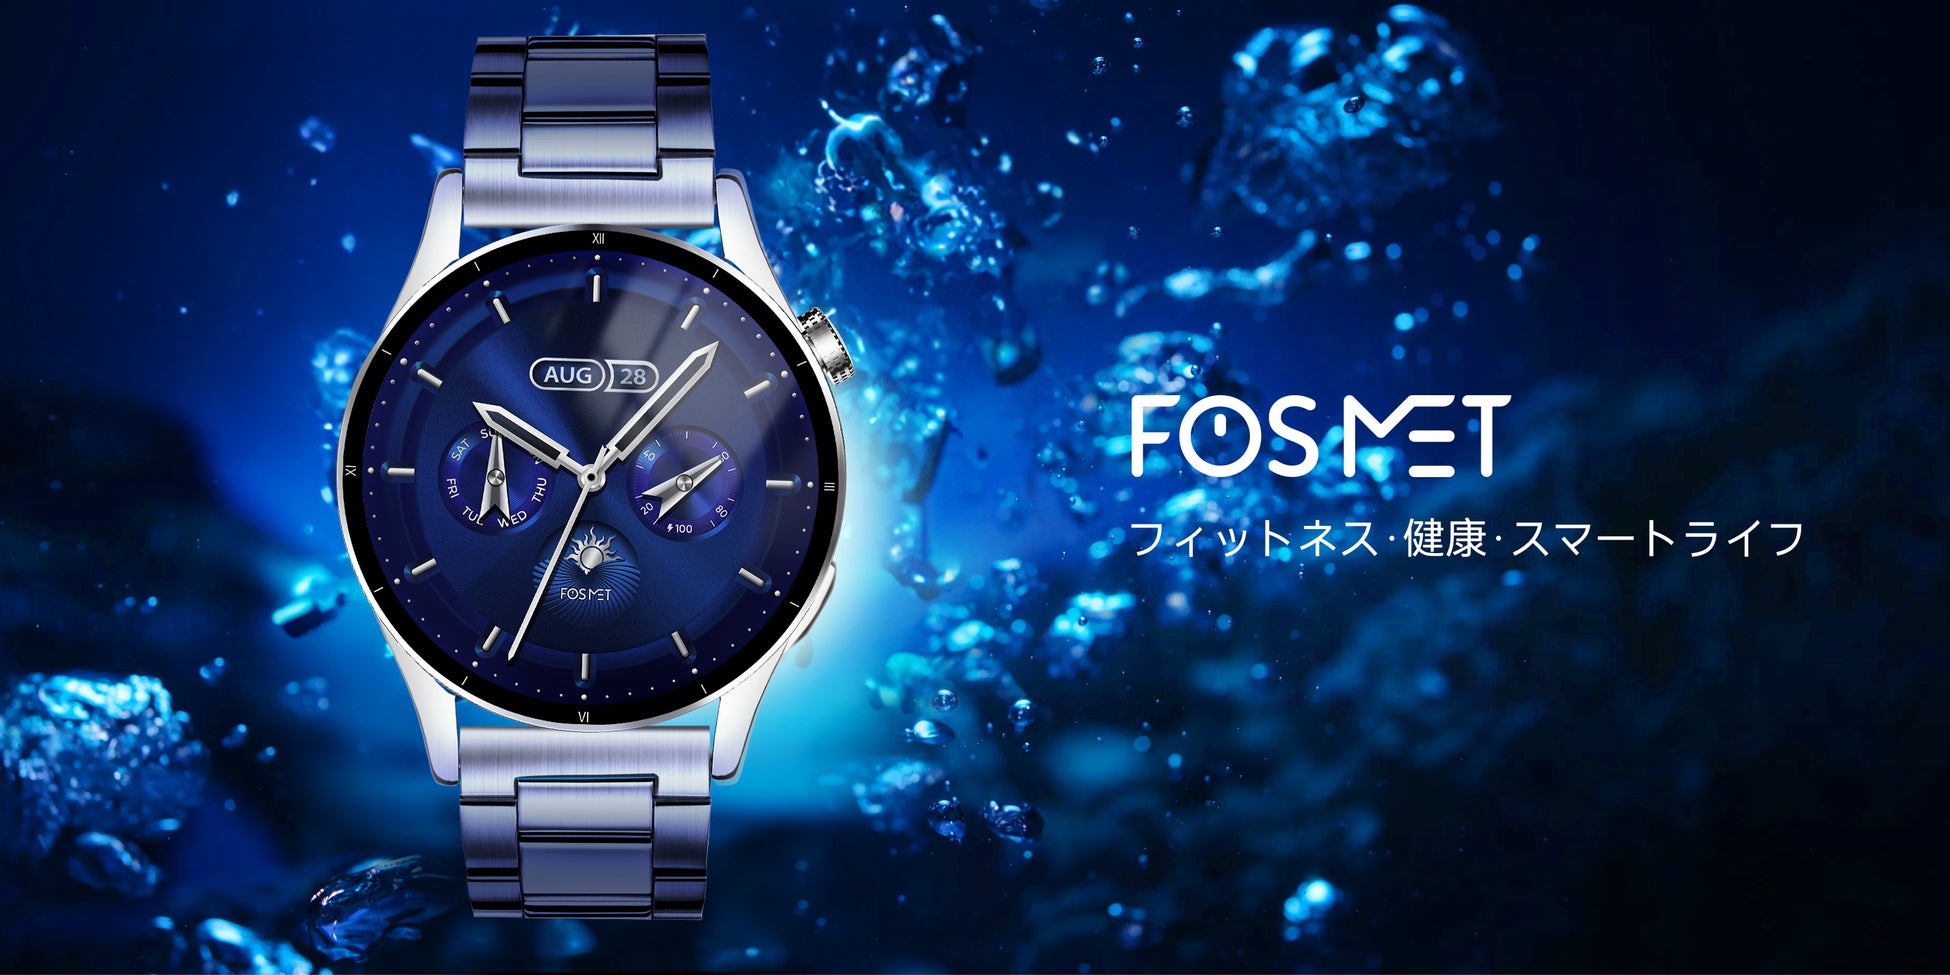 【FOSMET人気商品】クラシックな外観のQS39メタルバンドスマートウォッチ、伝統的な時計の製造技術とモダンな...